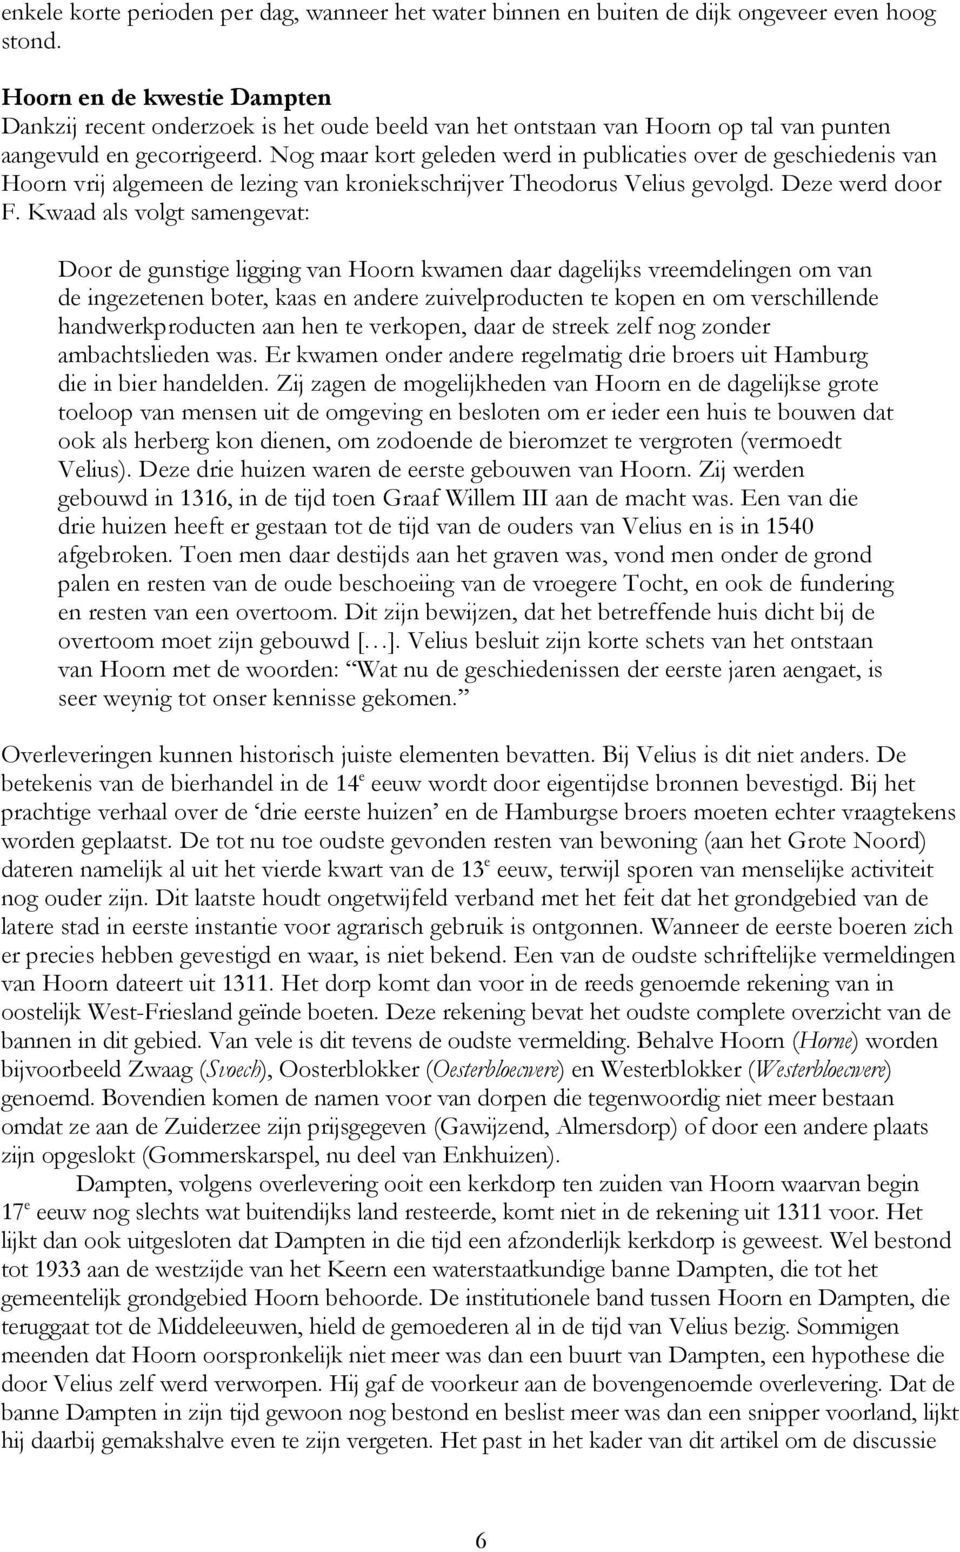 Nog maar kort geleden werd in publicaties over de geschiedenis van Hoorn vrij algemeen de lezing van kroniekschrijver Theodorus Velius gevolgd. Deze werd door F.